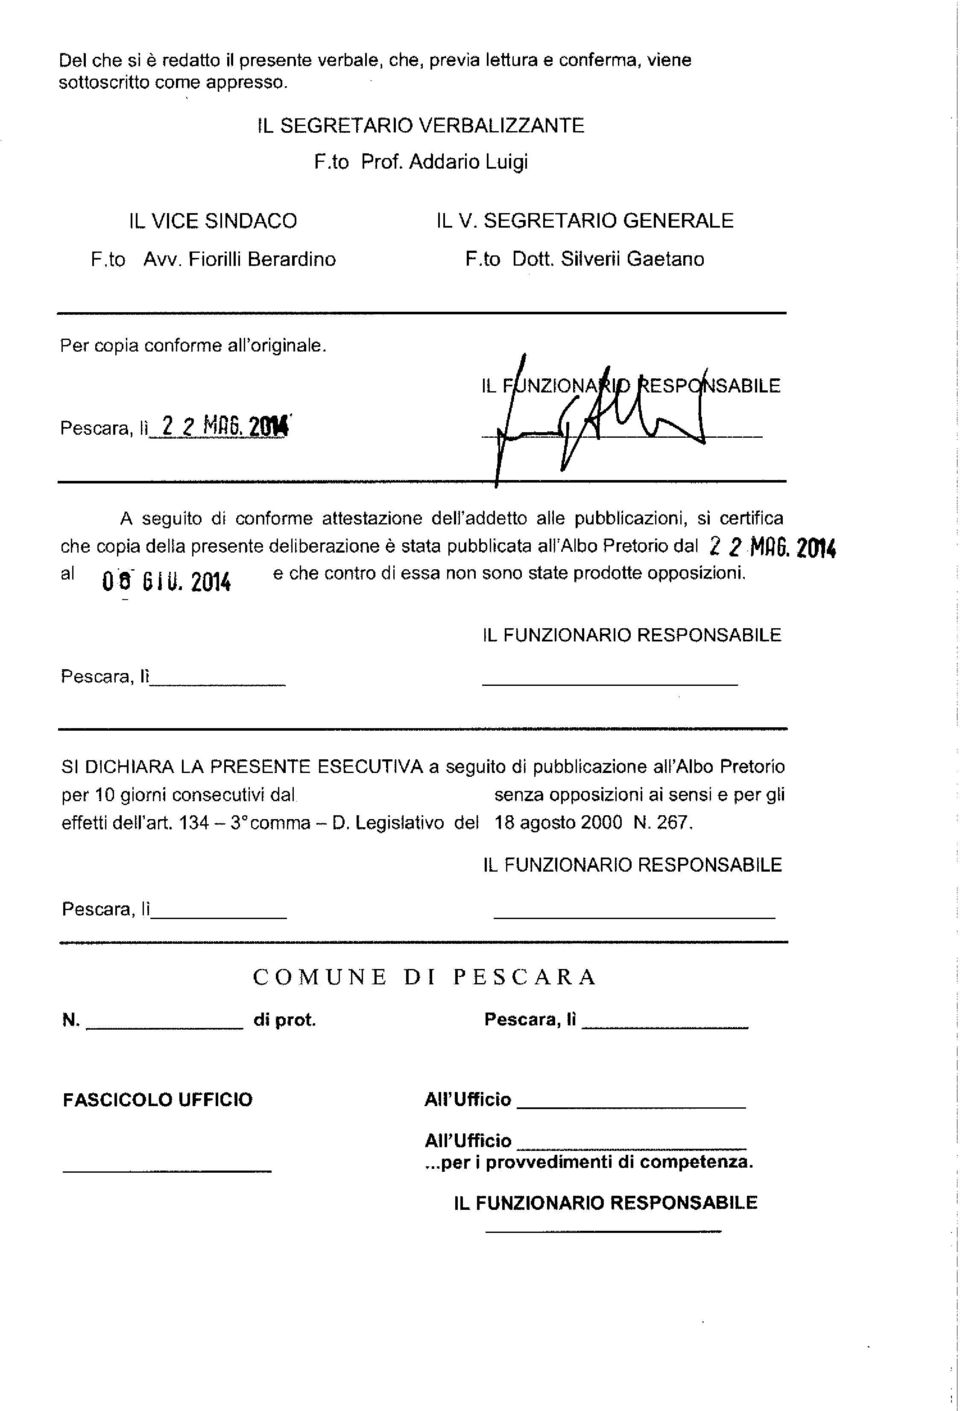 2014' A seguito di conforme attestazione dell'addetto alle pubblicazioni, si certifica che copia della presente deliberazione è stata pubblicata all'albo Pretorio dal 2 2 Mij6. 2014 al 0'6-6 j U.